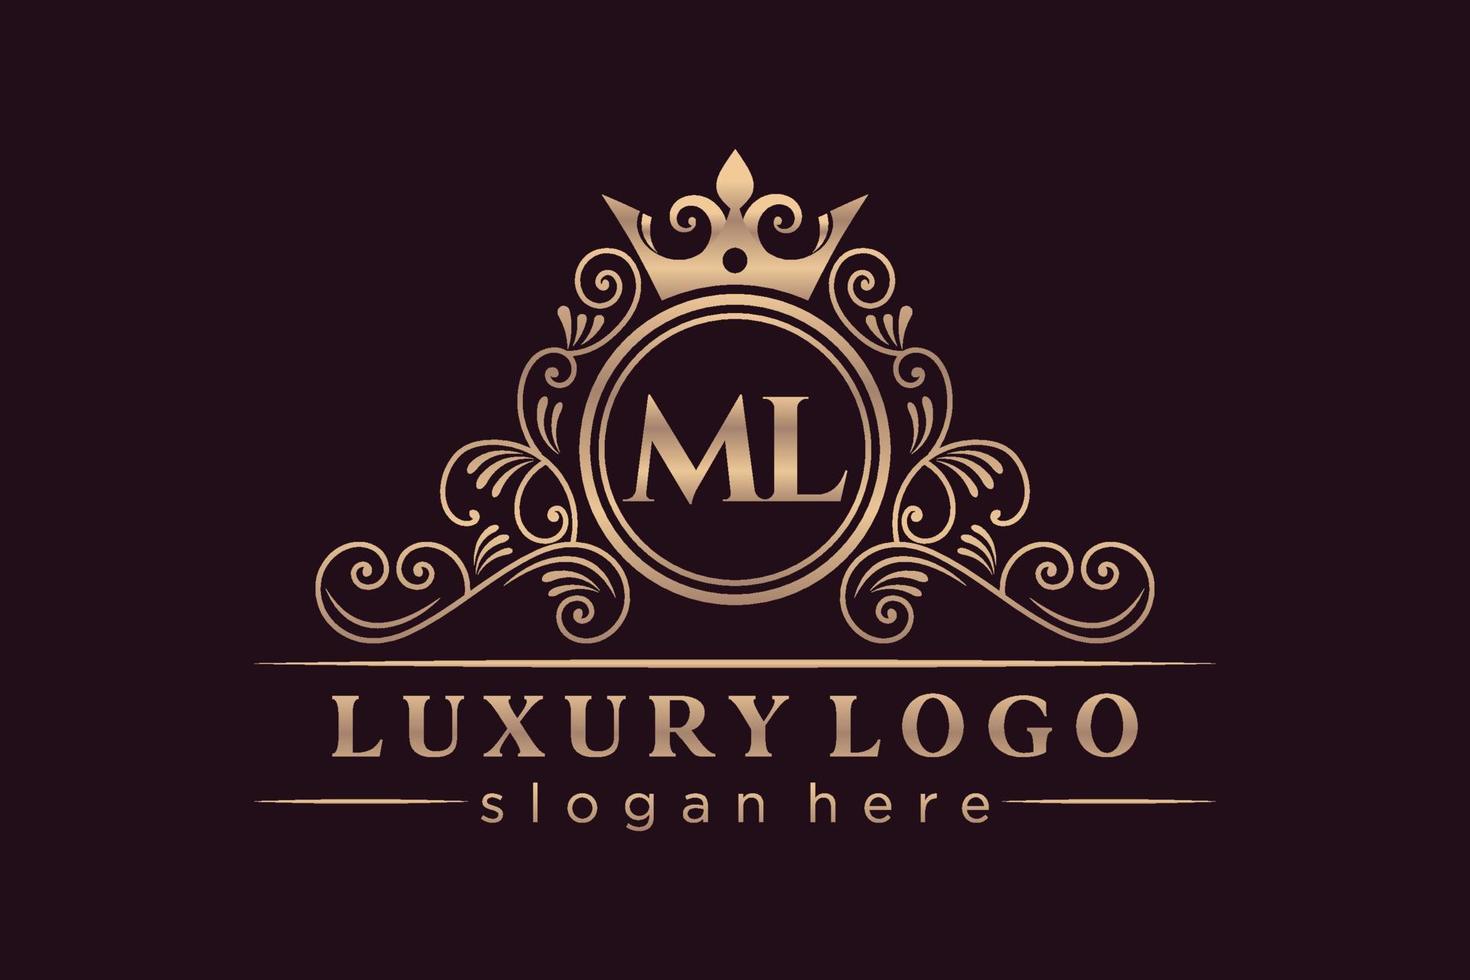 ml letra inicial ouro caligráfico feminino floral monograma heráldico desenhado à mão antigo estilo vintage design de logotipo de luxo vetor premium